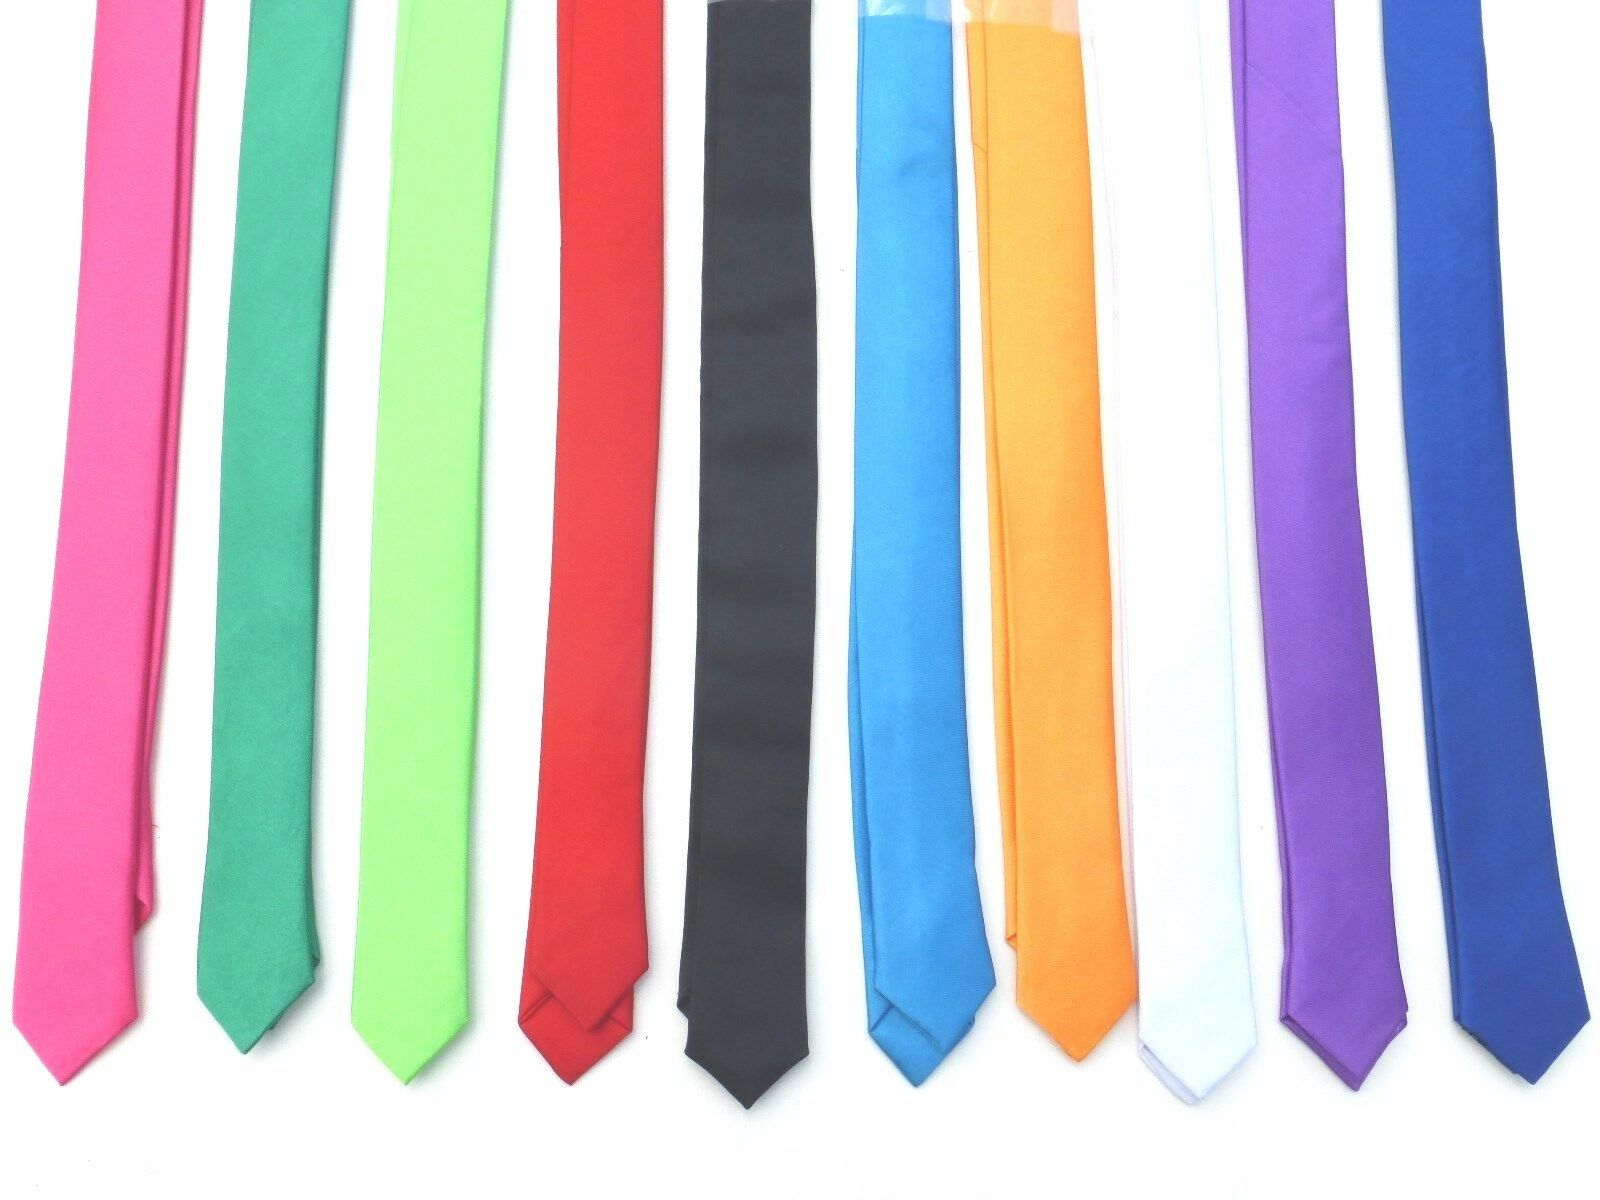 New 1.5 Inch Skinny Slim Retro Tie Narrow Thin Necktie Solid Color Usa Seller